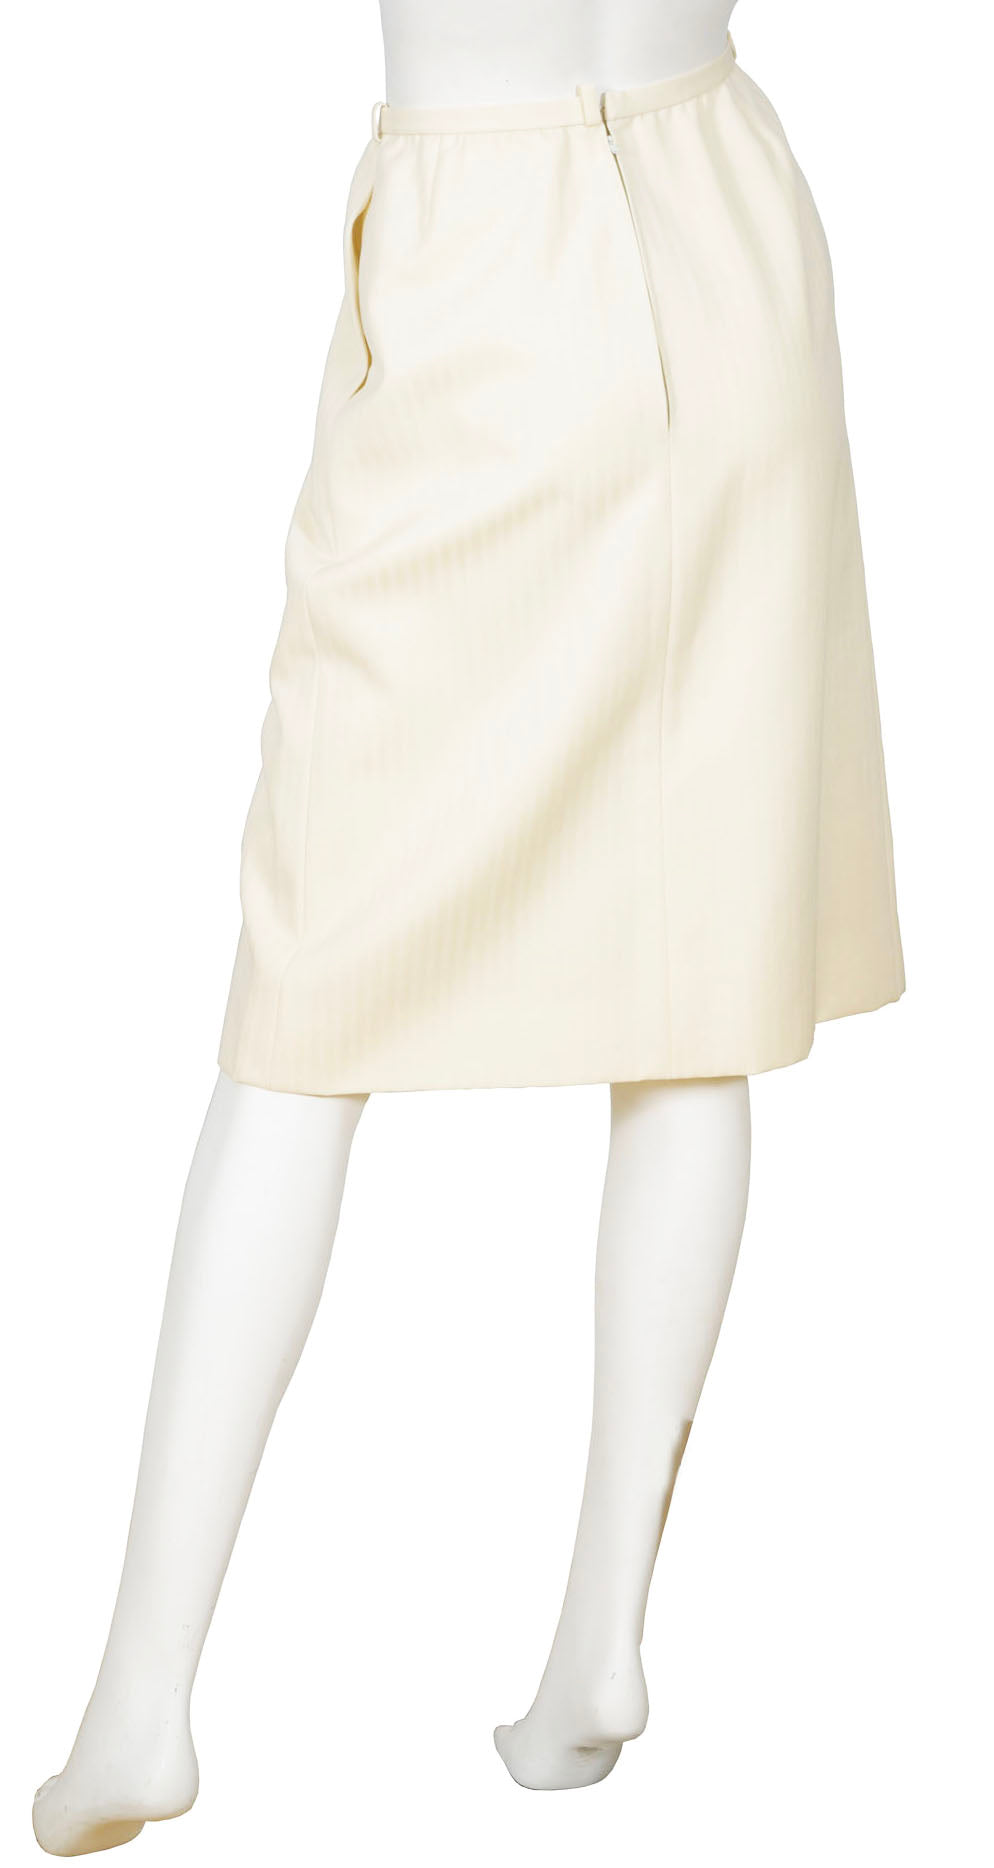 Christian Dior Haute Couture 1970s VTG Cream Wool Knee Length Skirt ...